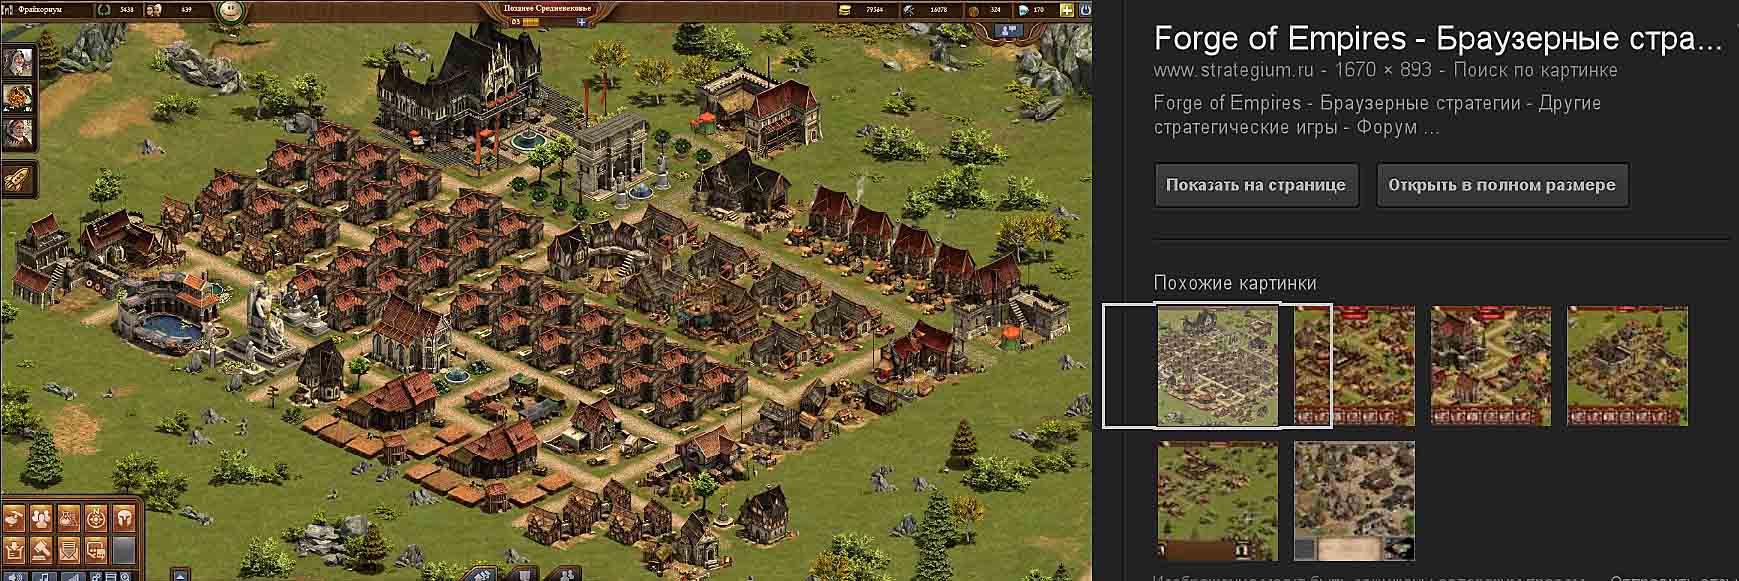 Forge of Empires (Фордж оф империя) играть в интернете